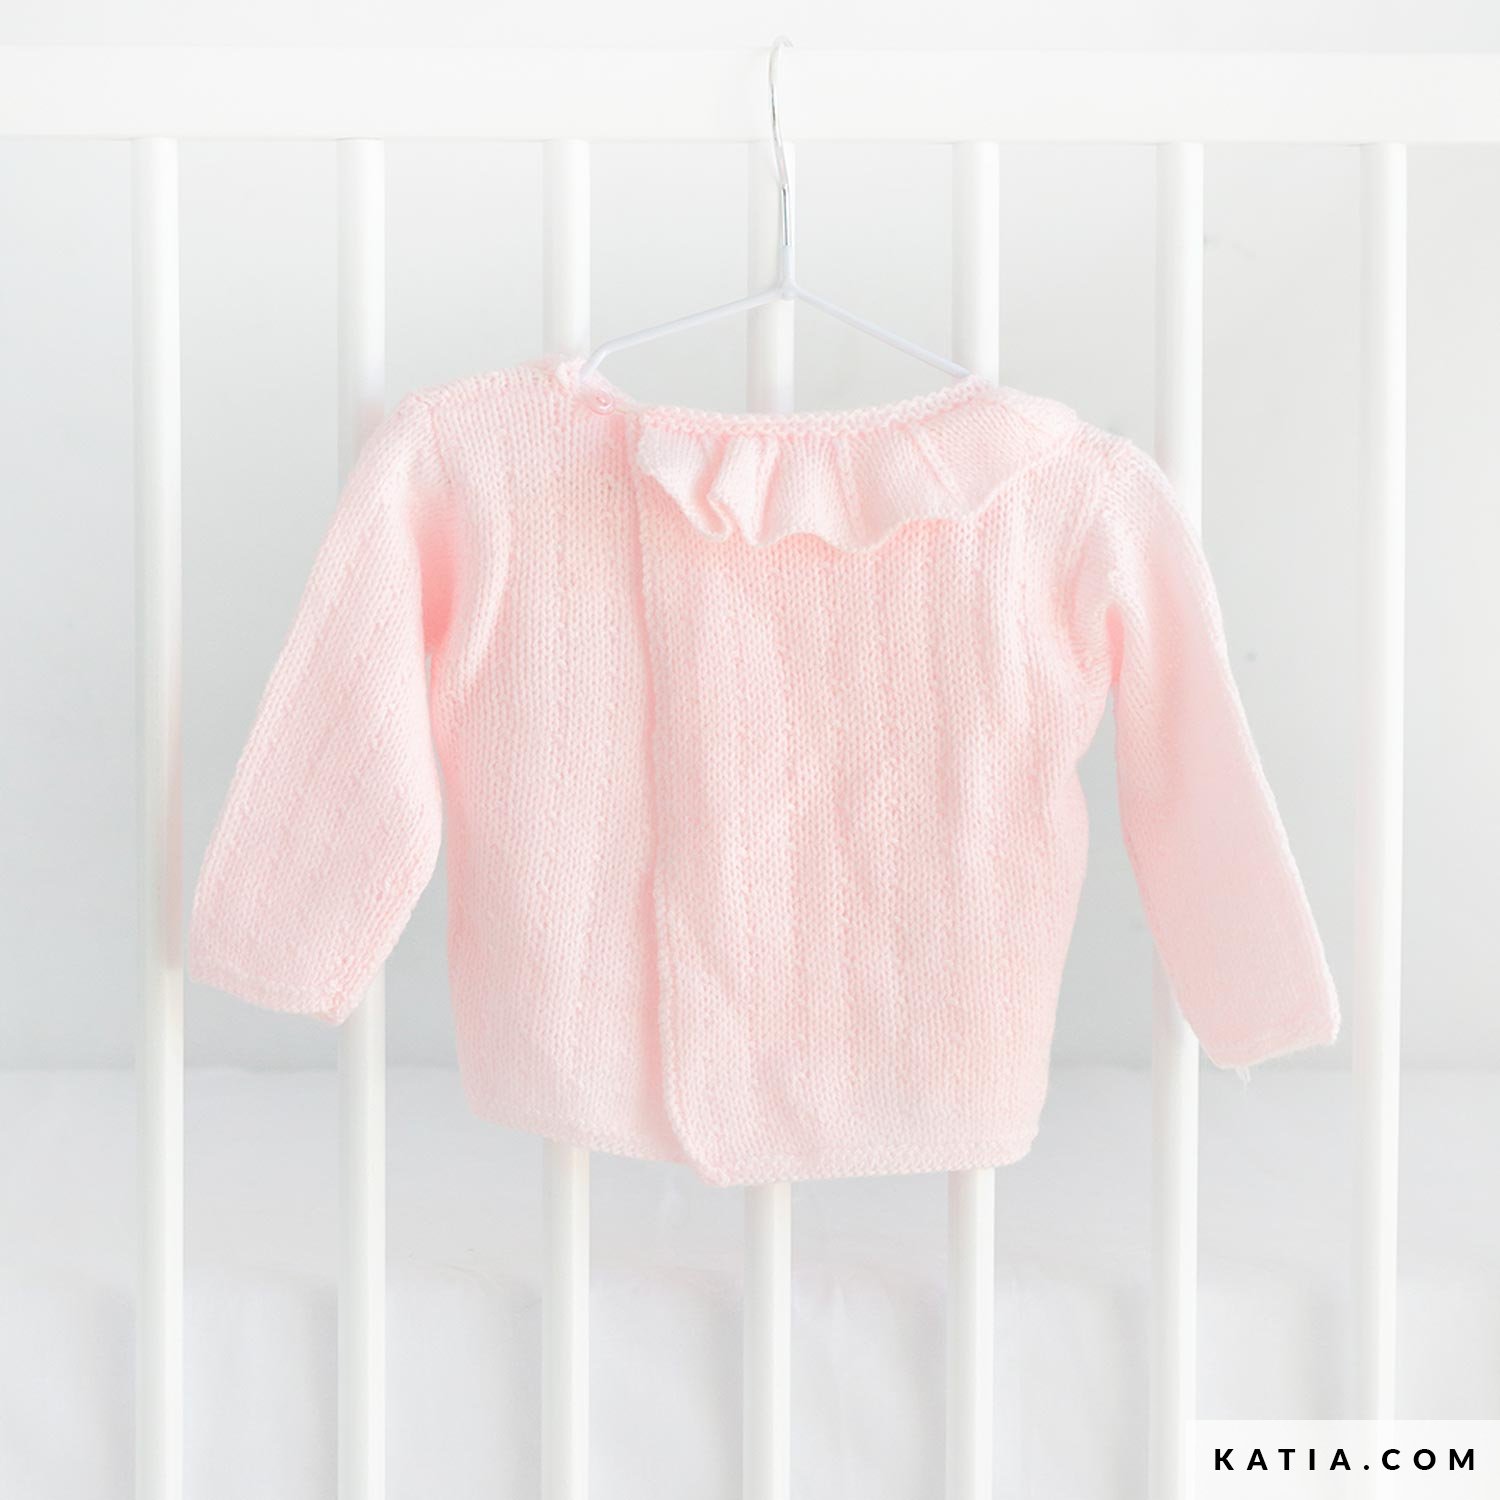 Hat Pink Bow 100% Turbo Acrylic Fiber Pale Blue Crochet Sweater Light Toddler Sweater Set Vintage Baby & Booties White Trim Kleding Meisjeskleding Babykleding voor meisjes Truien 